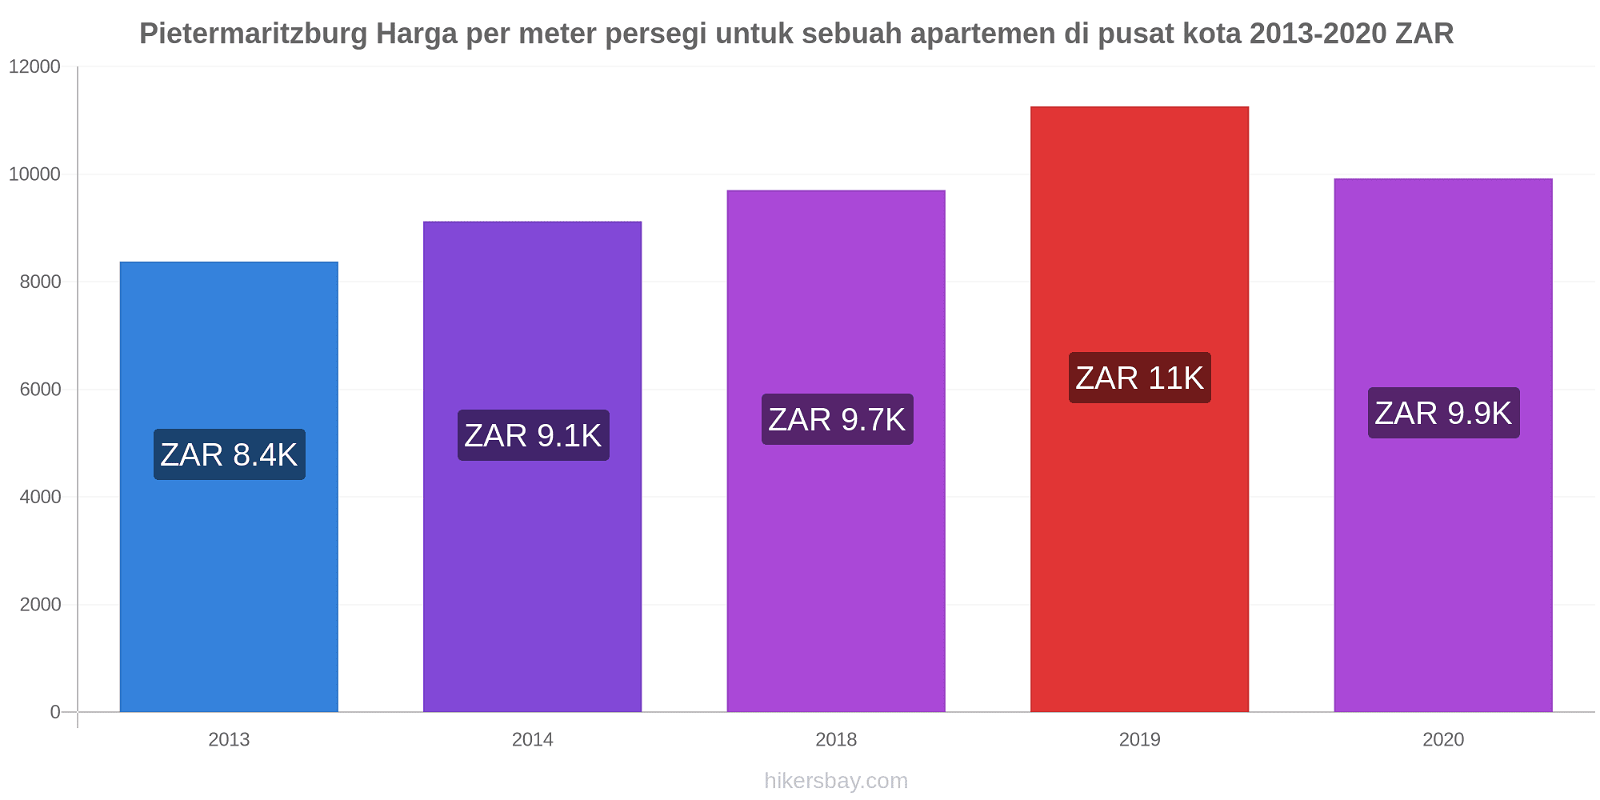 Pietermaritzburg perubahan harga Harga per meter persegi untuk sebuah apartemen di pusat kota hikersbay.com